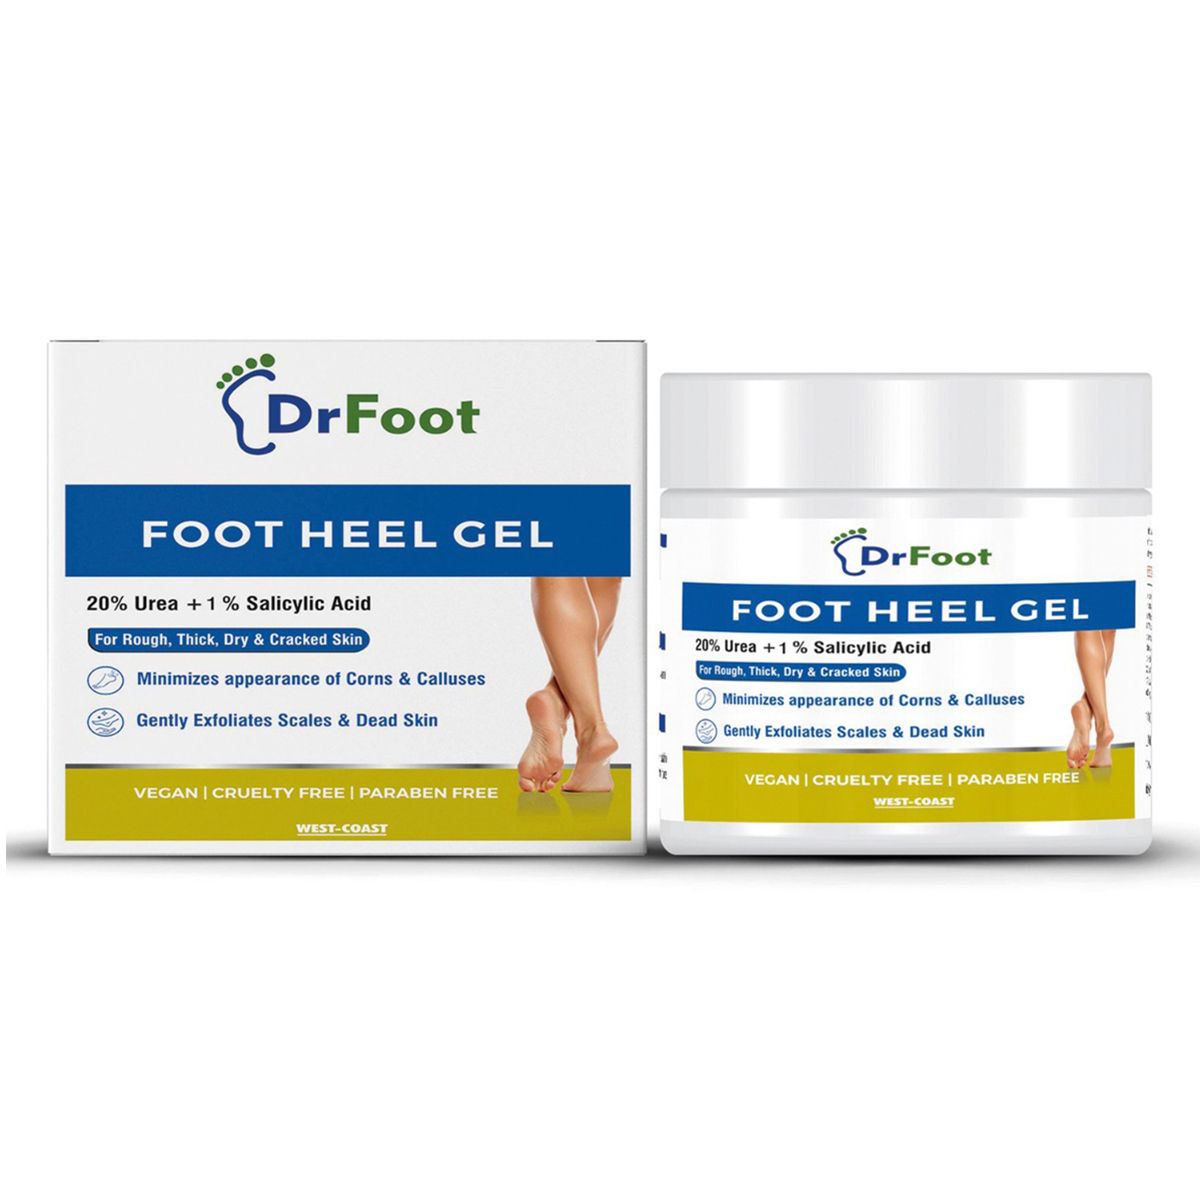 Buy Dr Foot Foot Heel Gel, 100 gm Online